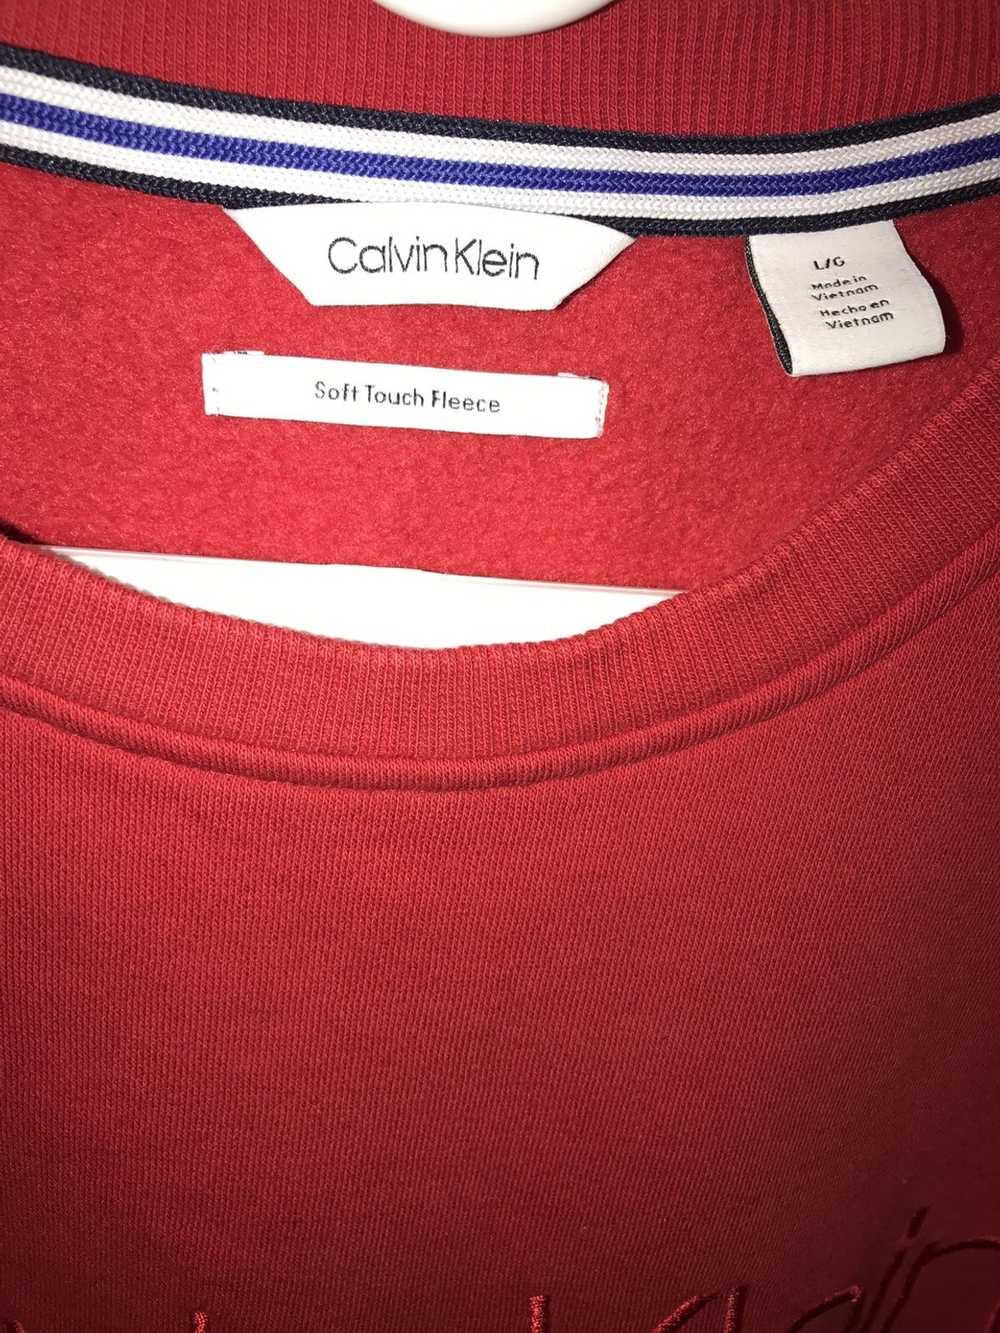 Calvin Klein Calvin Klein pullover soft fleece re… - image 2